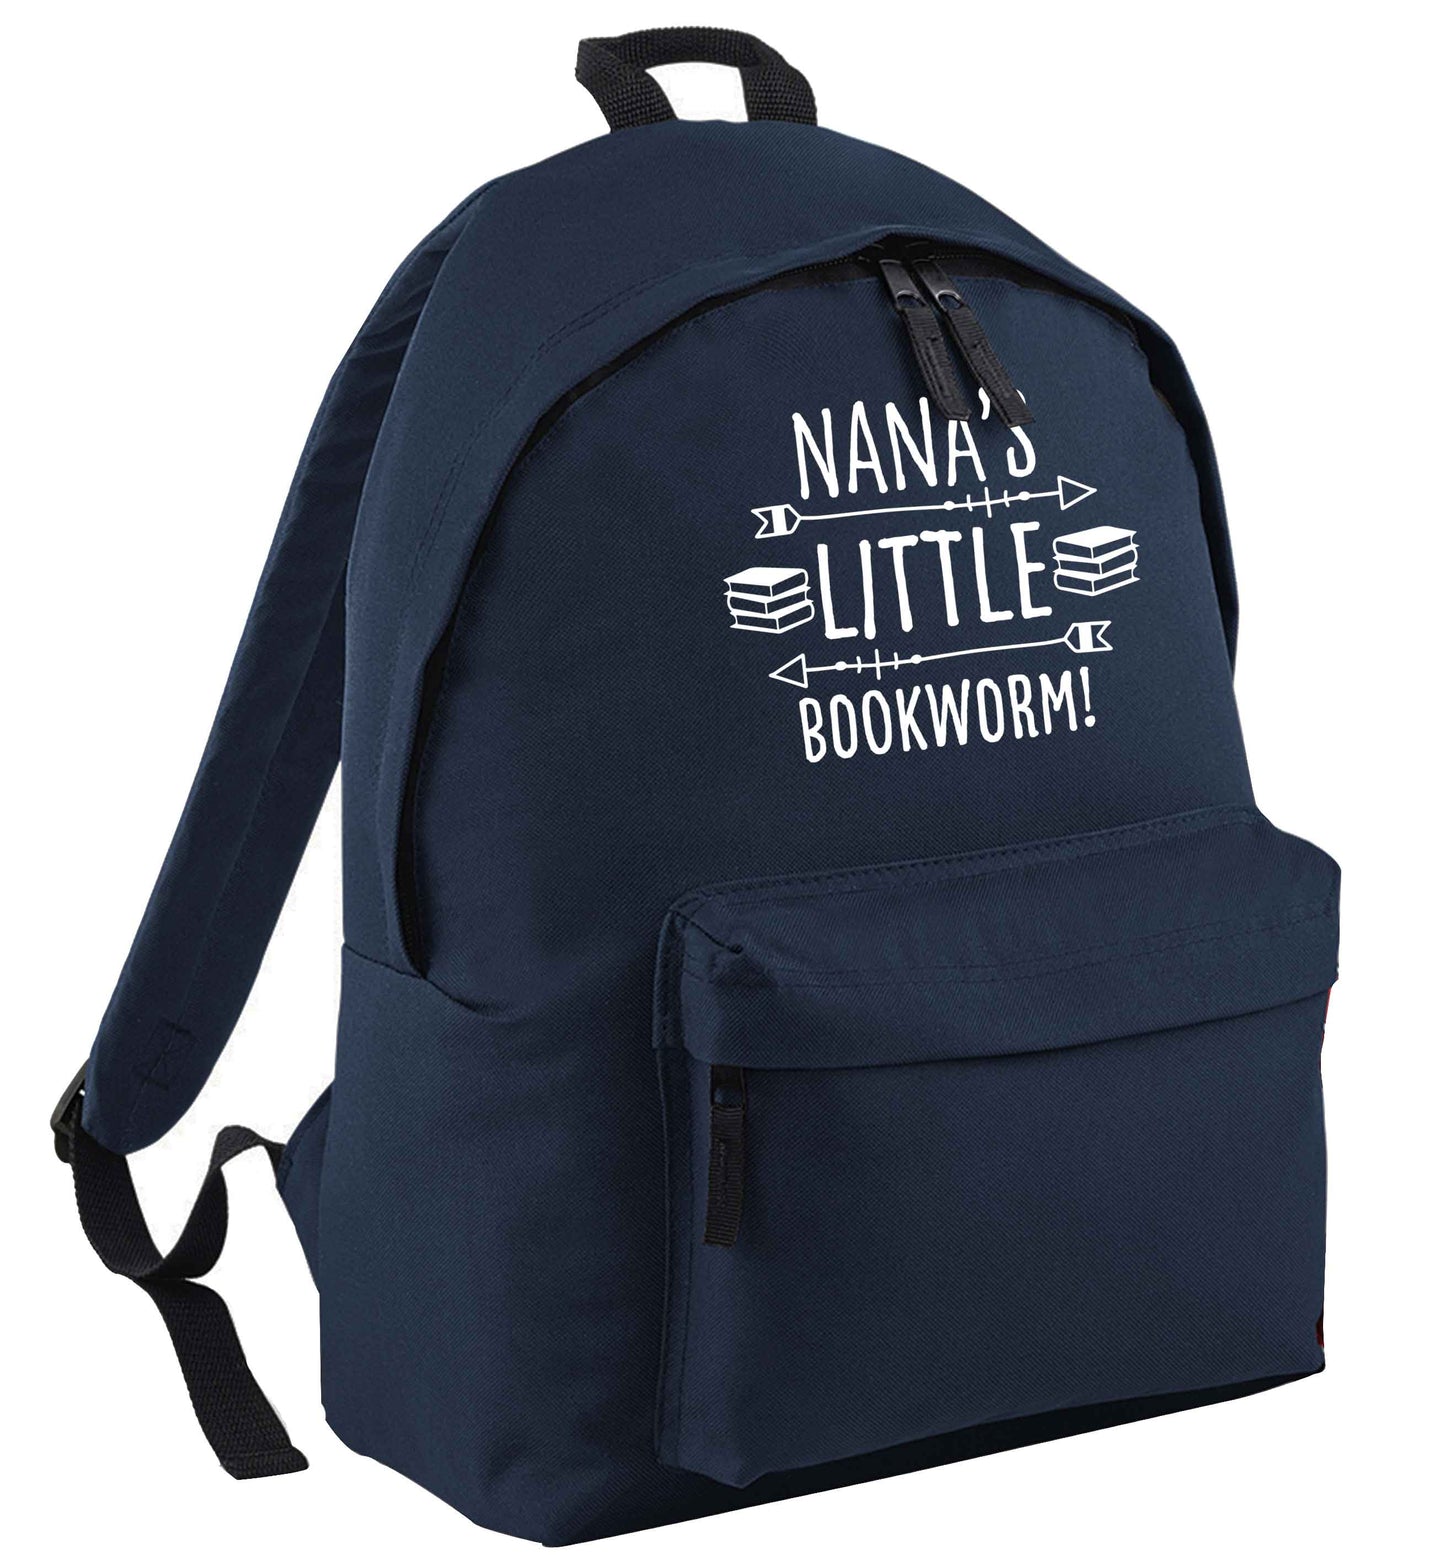 Grandad's little bookworm | Children's backpack